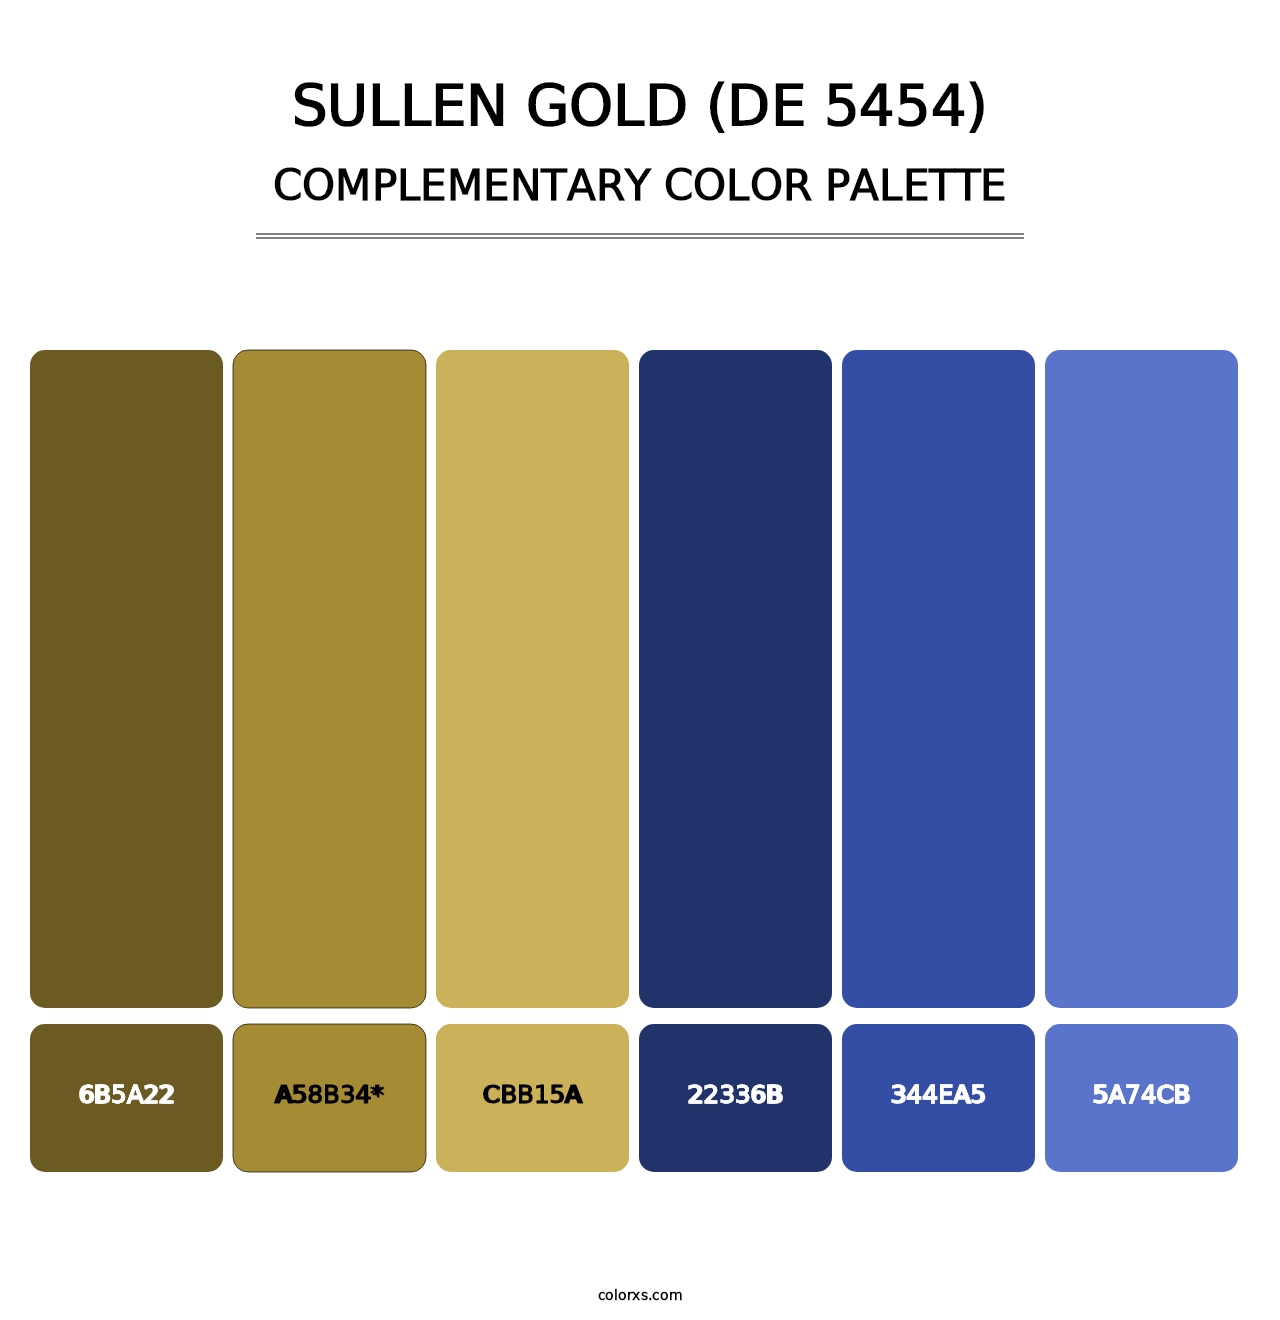 Sullen Gold (DE 5454) - Complementary Color Palette